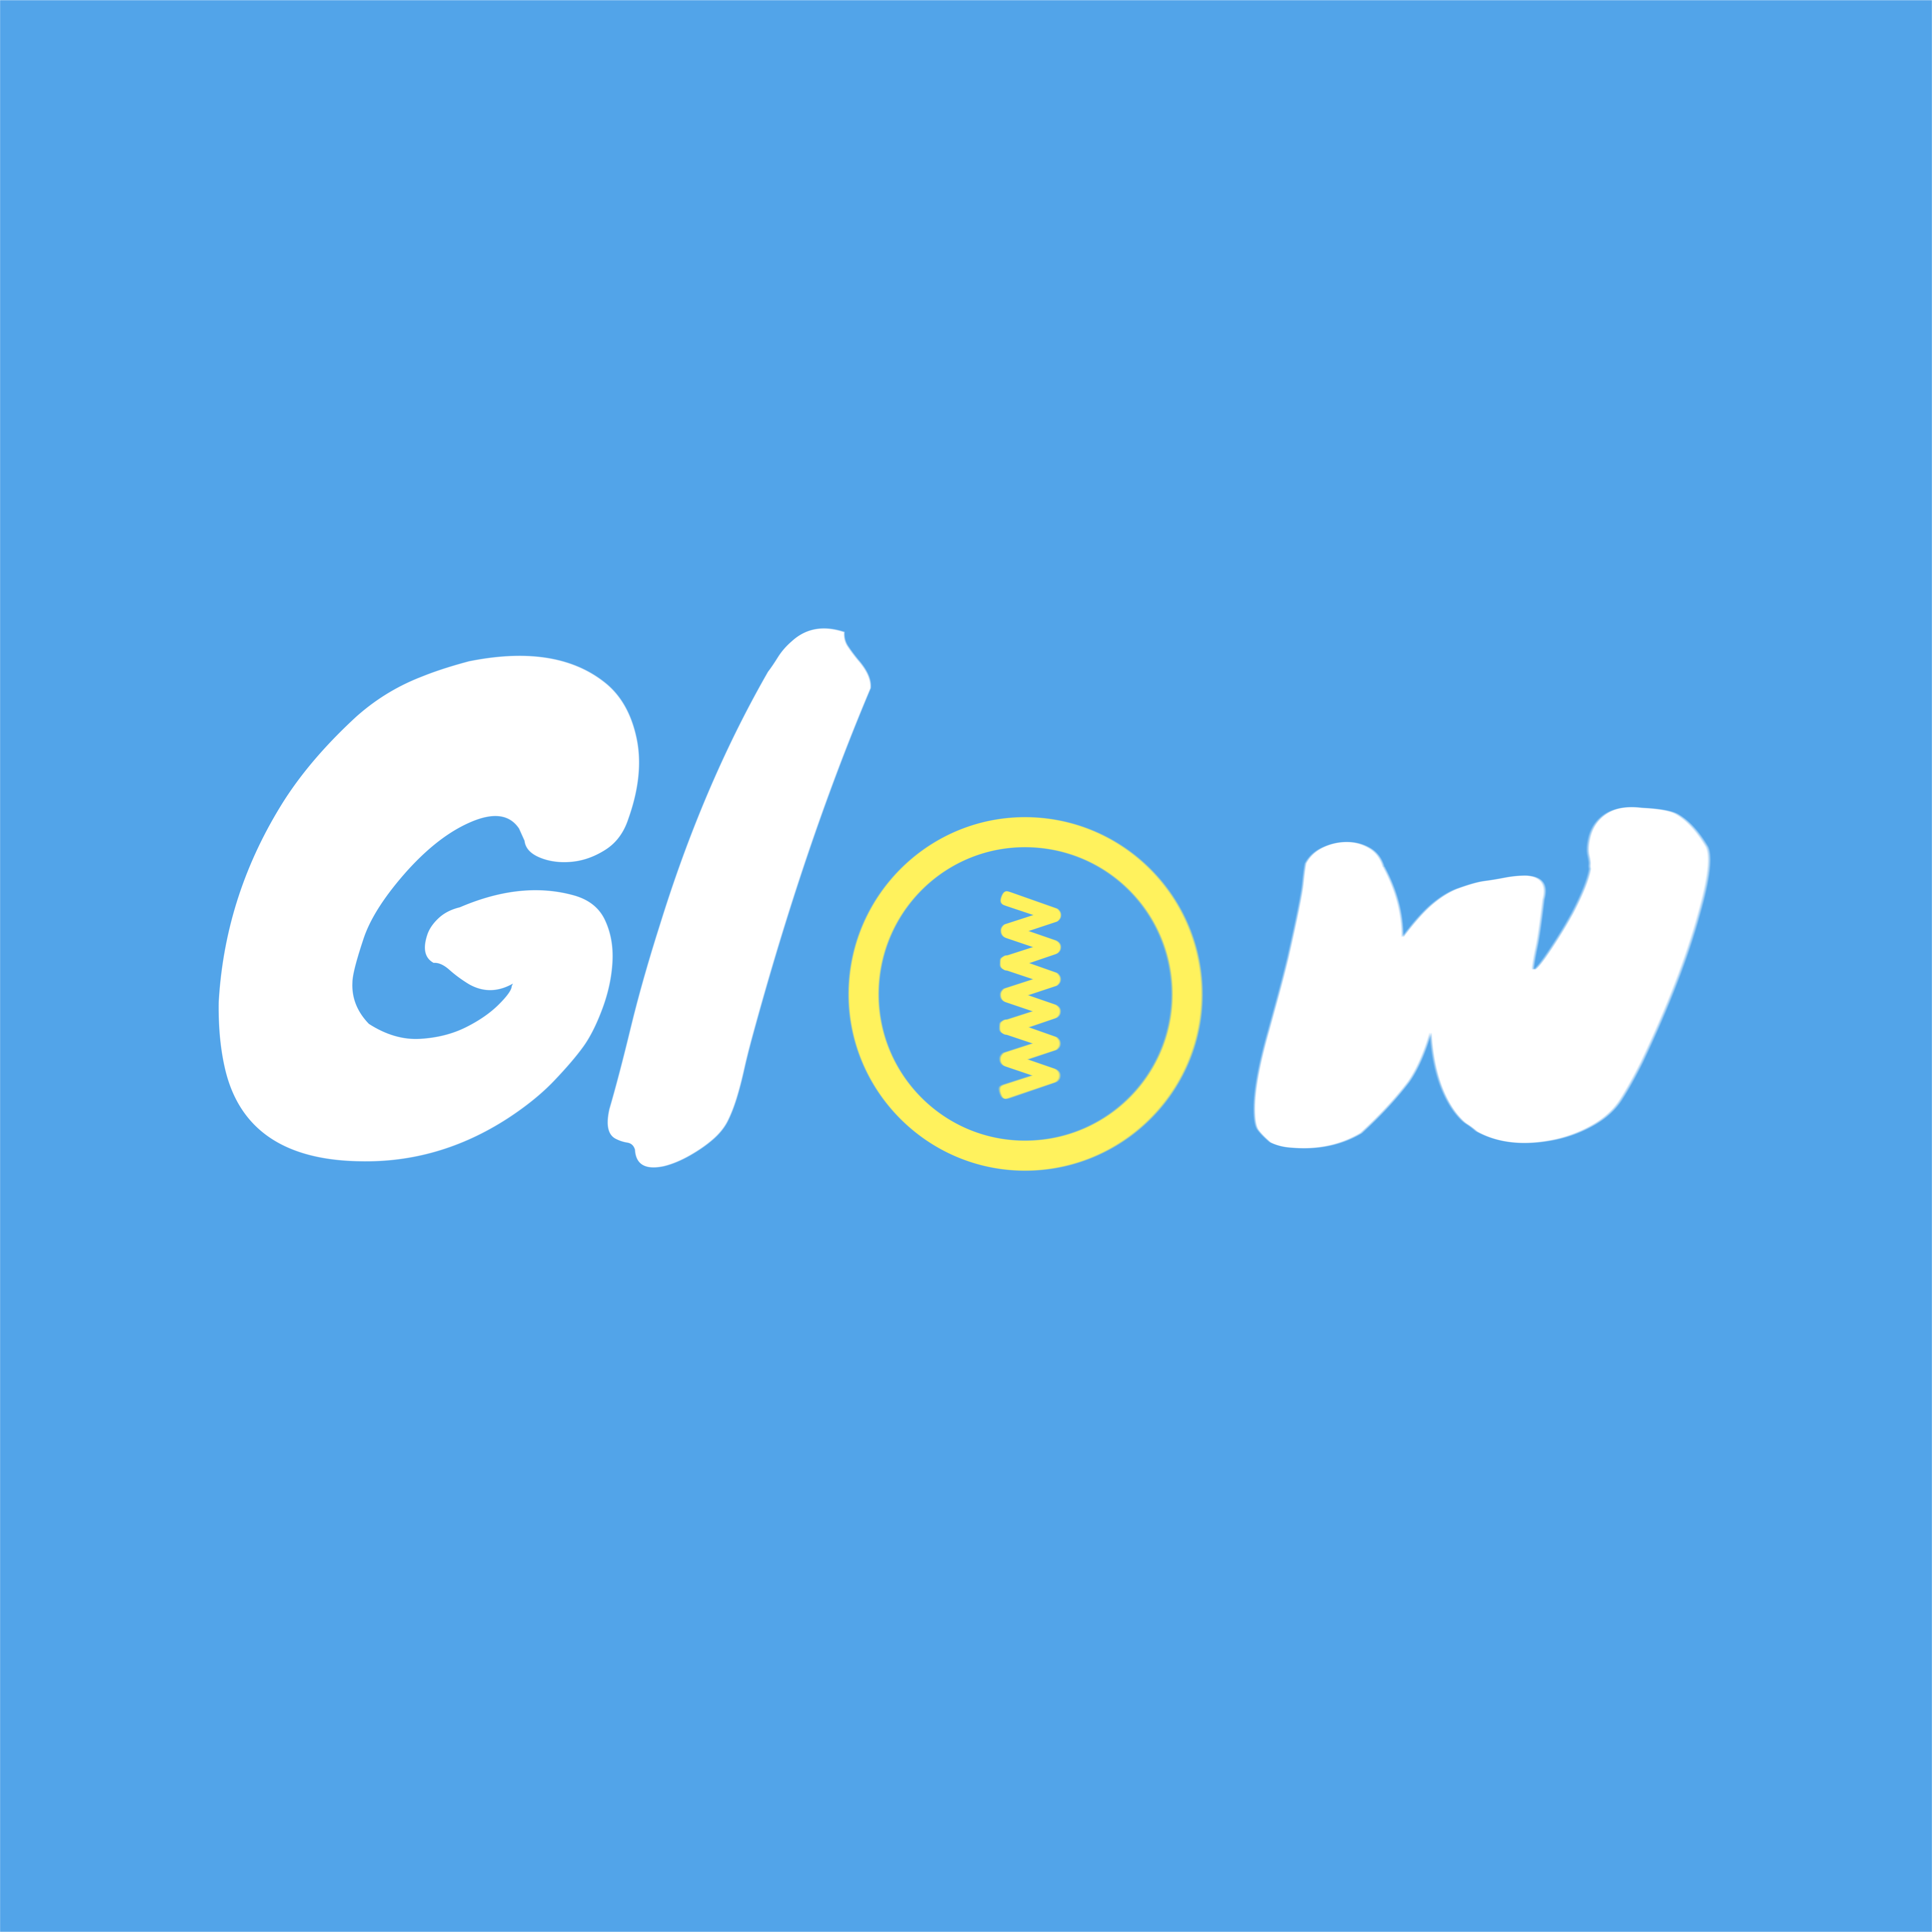 Glow Studio imagine, réalise est créé vos vidéos corporates en Motion Design ou en prise de vue réelle, en HD ou en 4K.